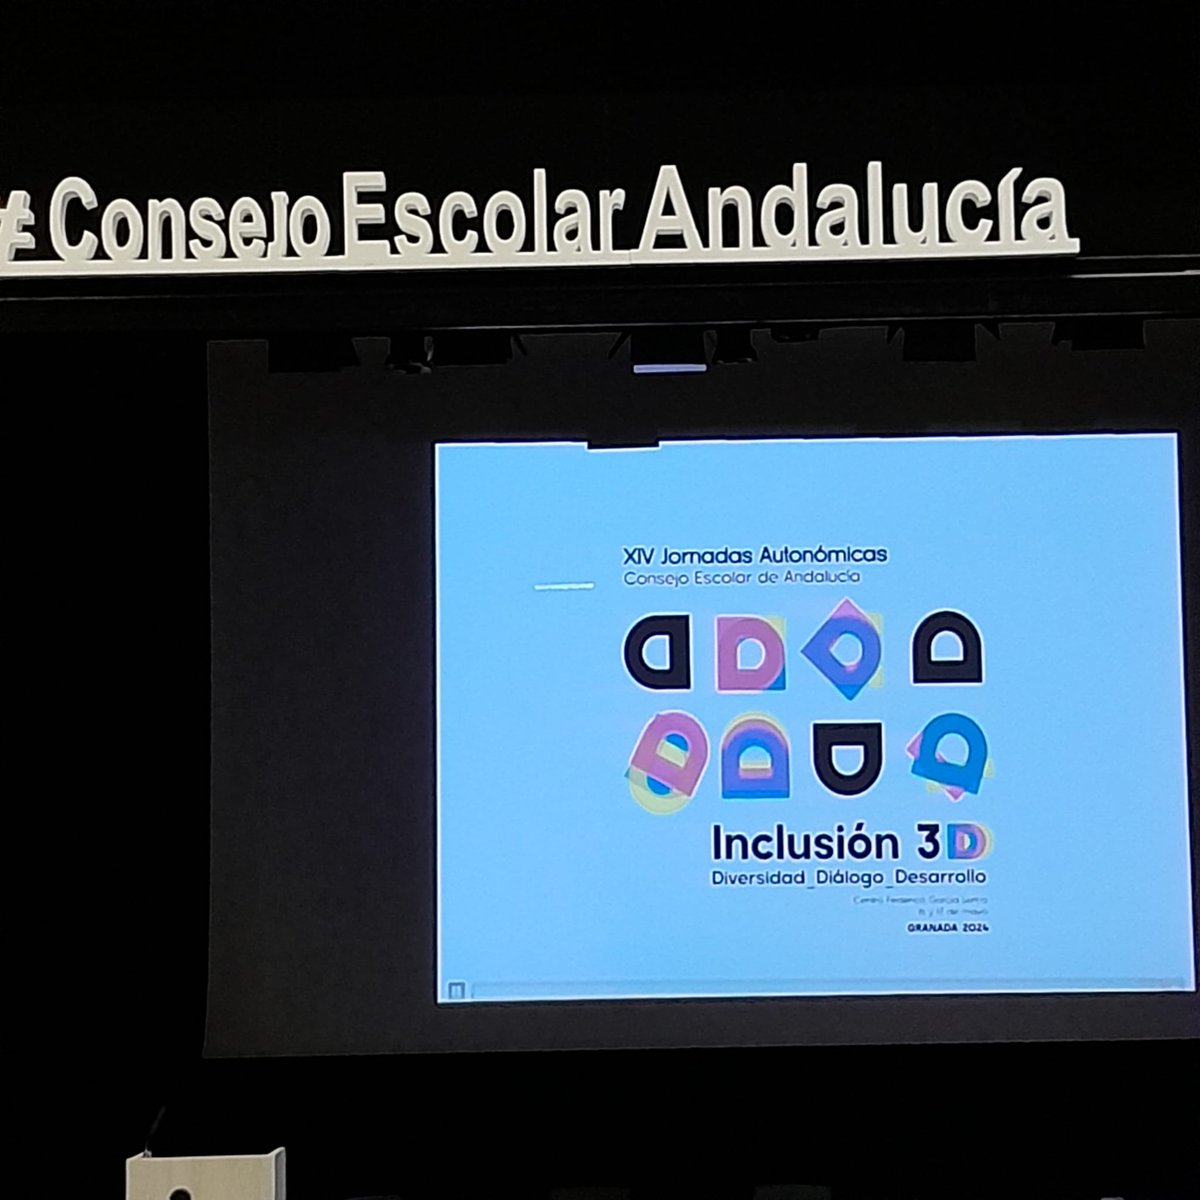 El CEIP Emilio Prados ha participado en las XIV Jornadas Autonómicas del Consejo Escolar de Andalucía en Granada (16 y 17 de mayo), centradas en la temática de la inclusión. Esta, no es una utopía, es una realidad que juntos podemos construir.

@EducaAnd
#educacioninclusiva